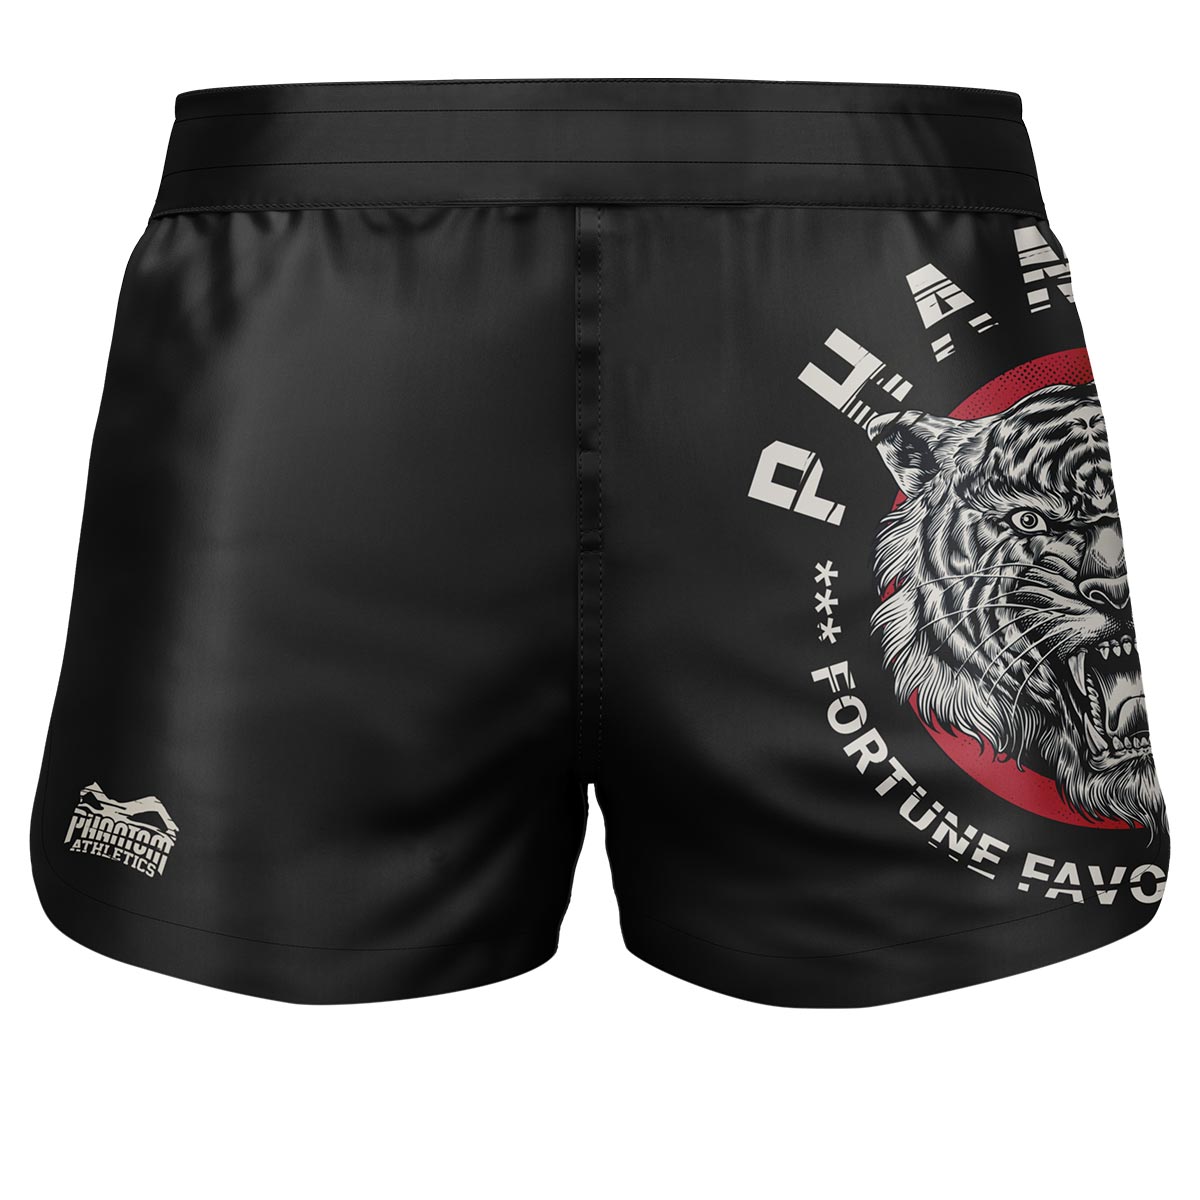 Phantom Fightshorts Fusion 2v1. Špičkové šortky pro vaše bojová umění. Ideální pro MMA, Muay Thai, BJJ, wrestling a další. V černé barvě s naším oblíbeným designem Tiger Unit.